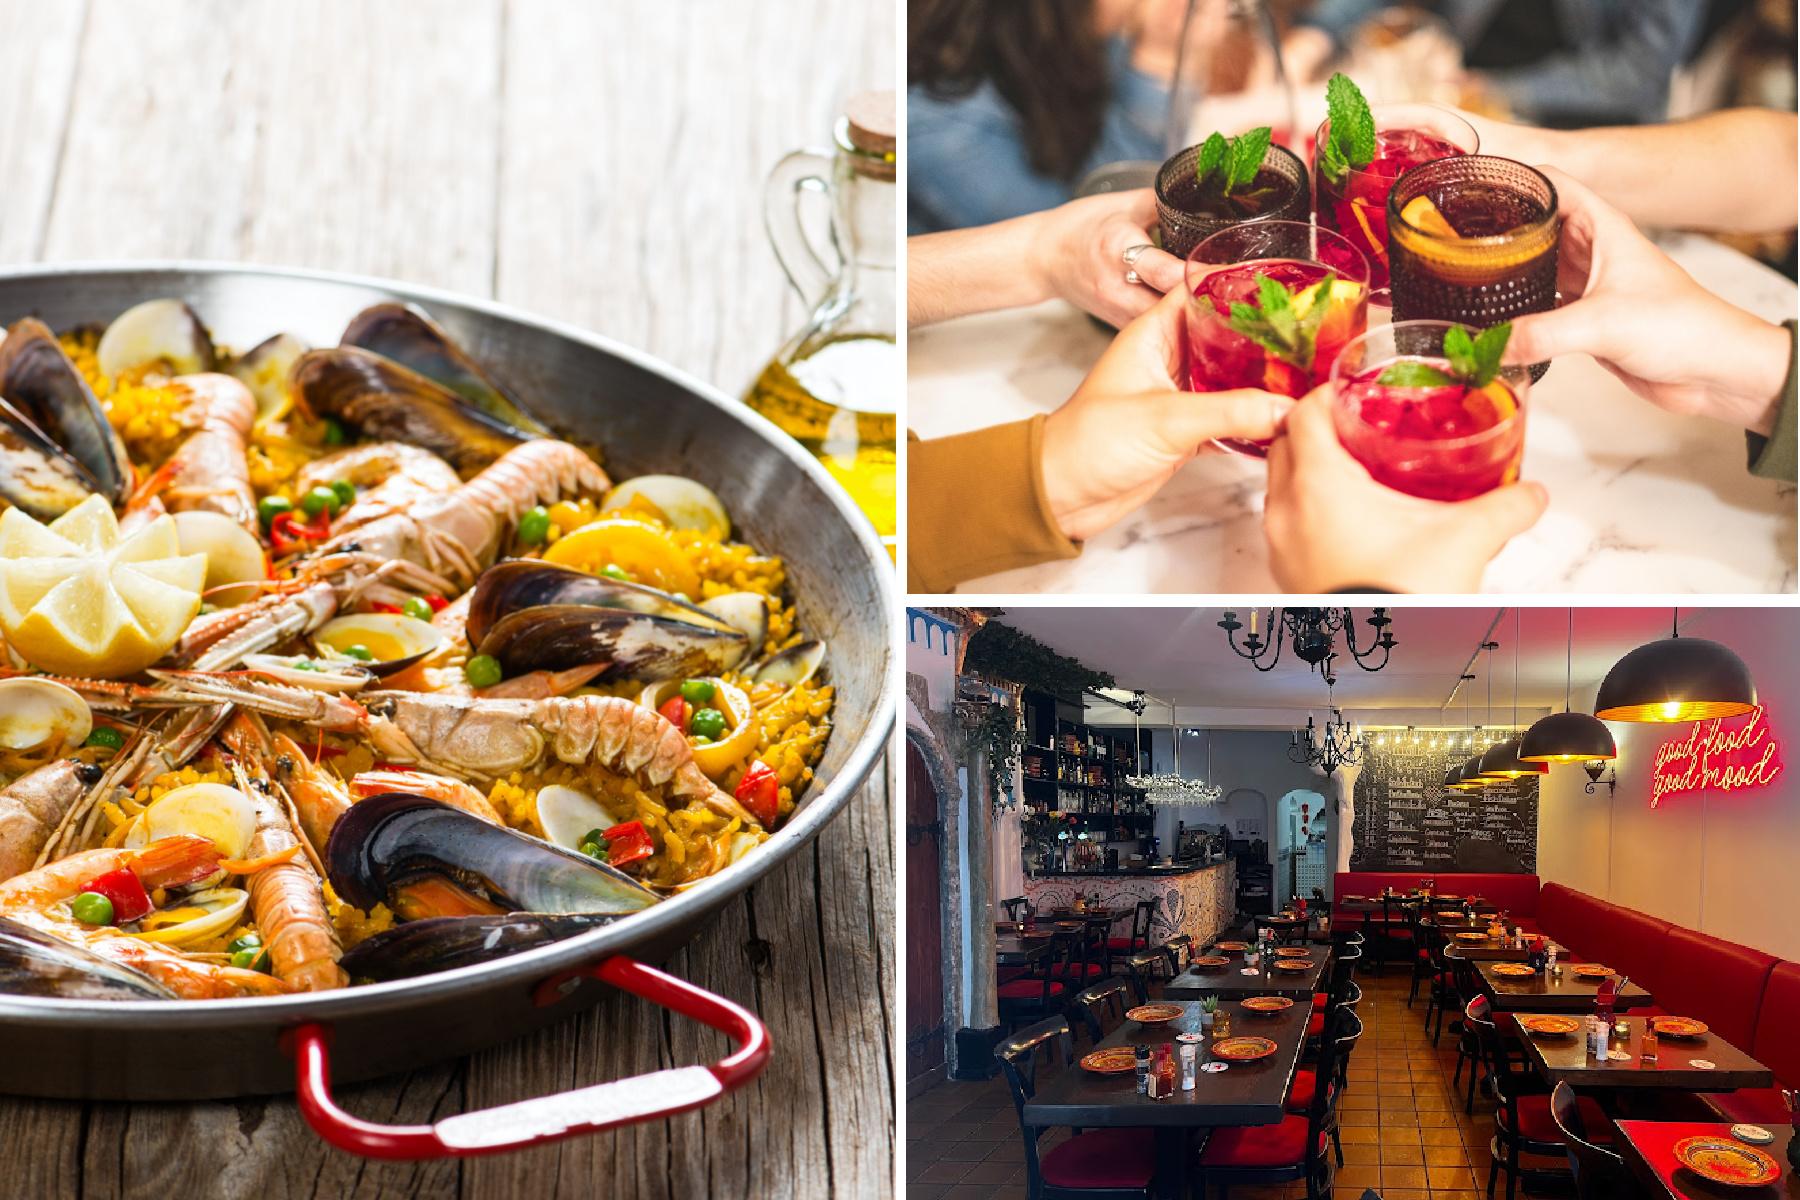 Paella naar keuze + sangria bij Restaurant Granada nabij Leidseplein